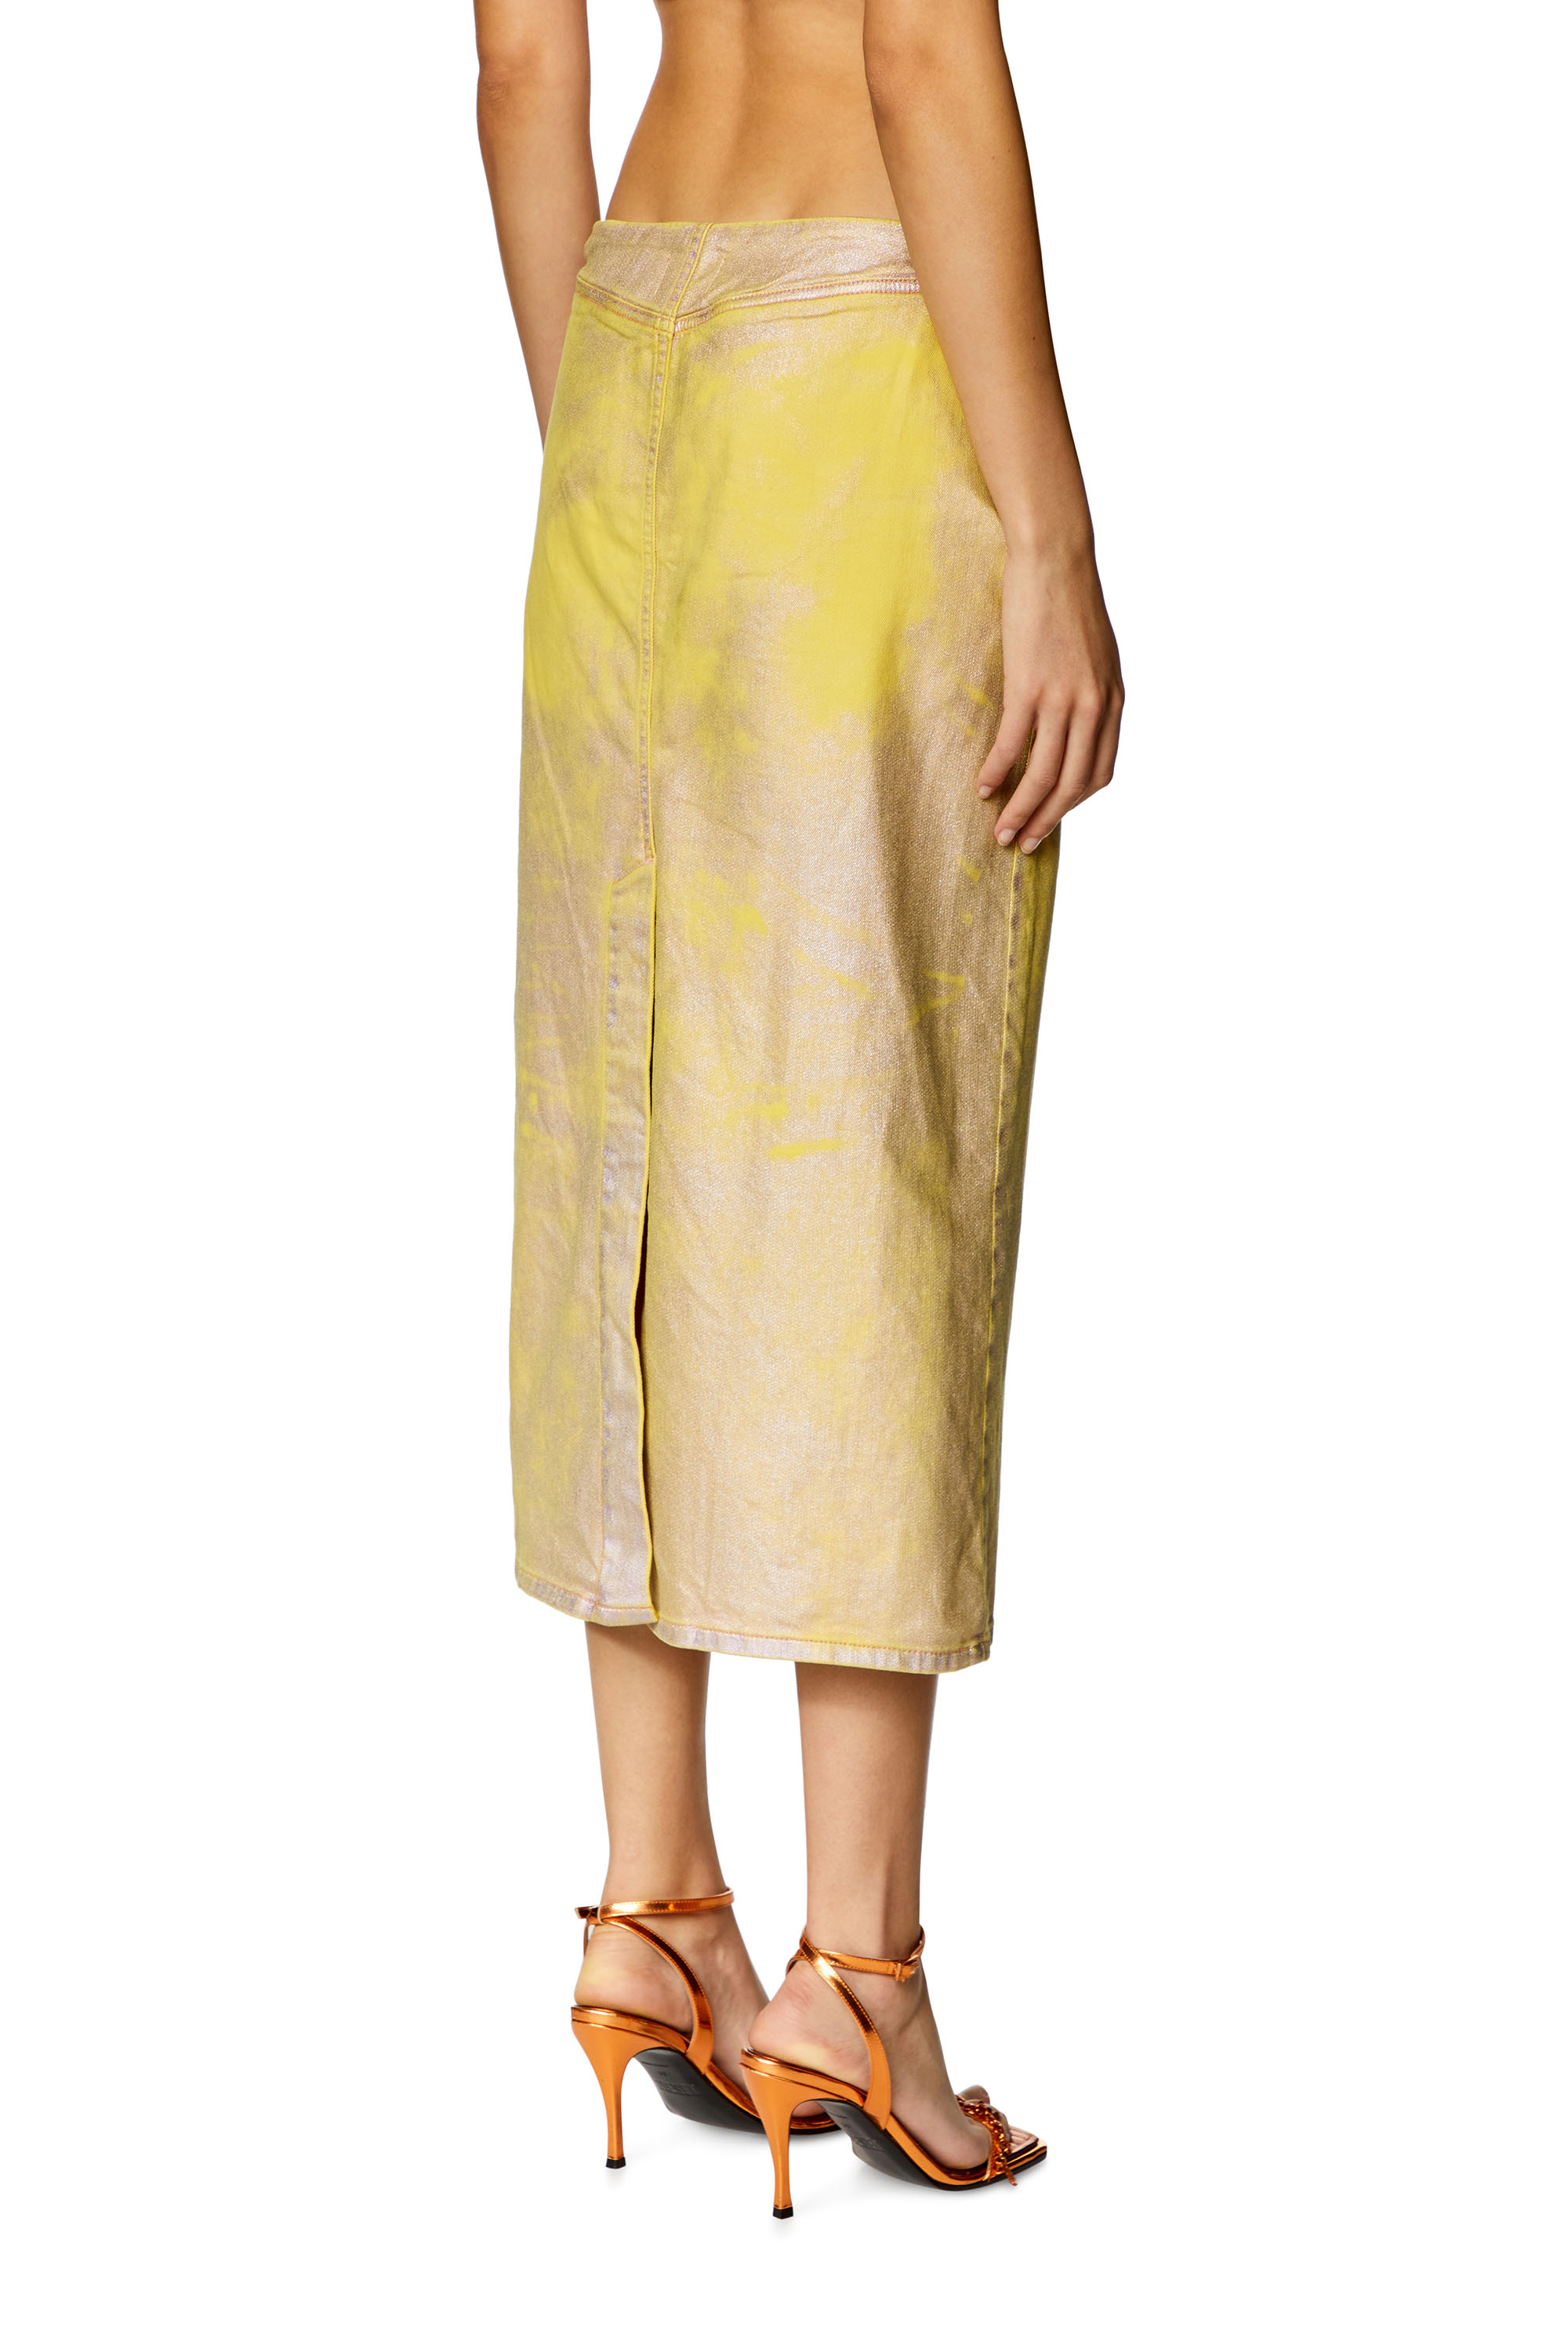 Diesel - DE-PRA-S2, Woman Skirt in bicolour laminated denim in Yellow - Image 4